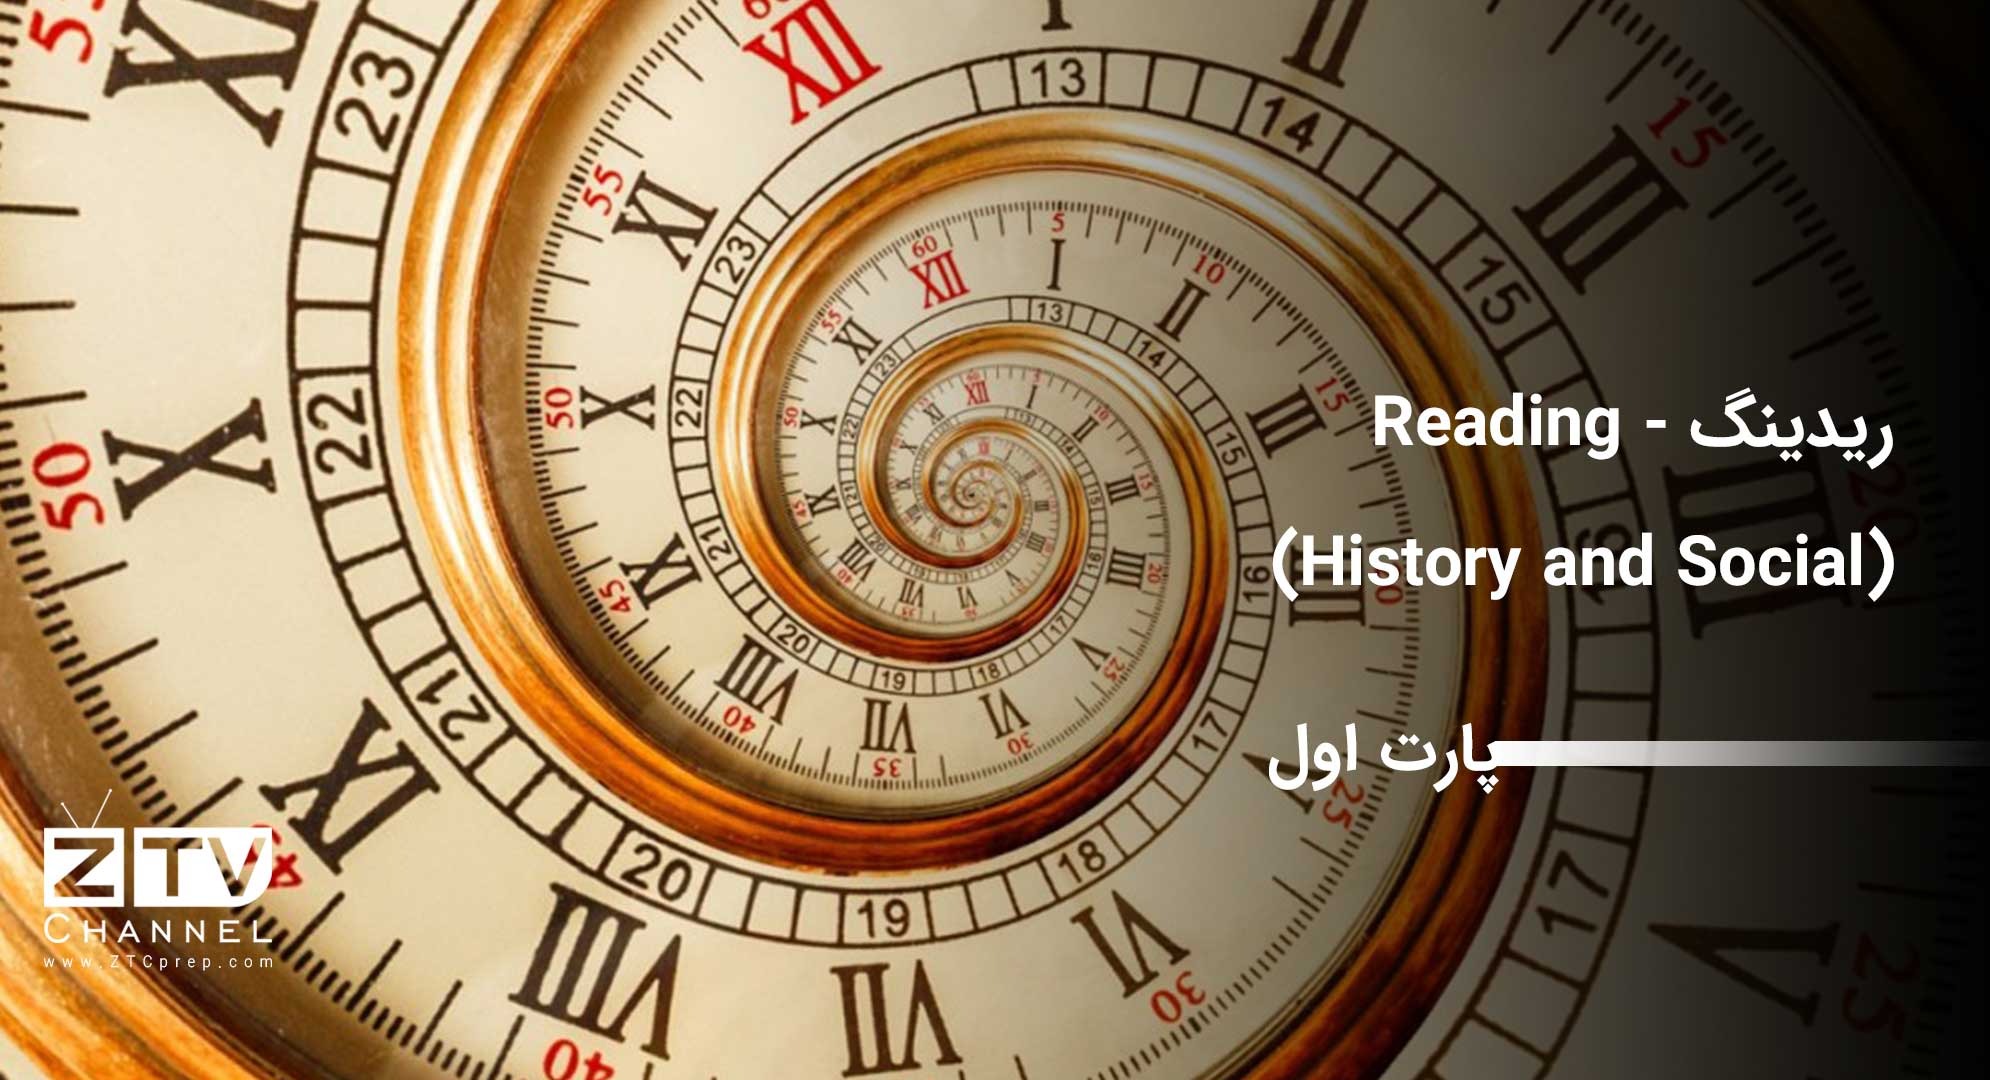 ریدینگ - Reading (History and Social) – پارت اول